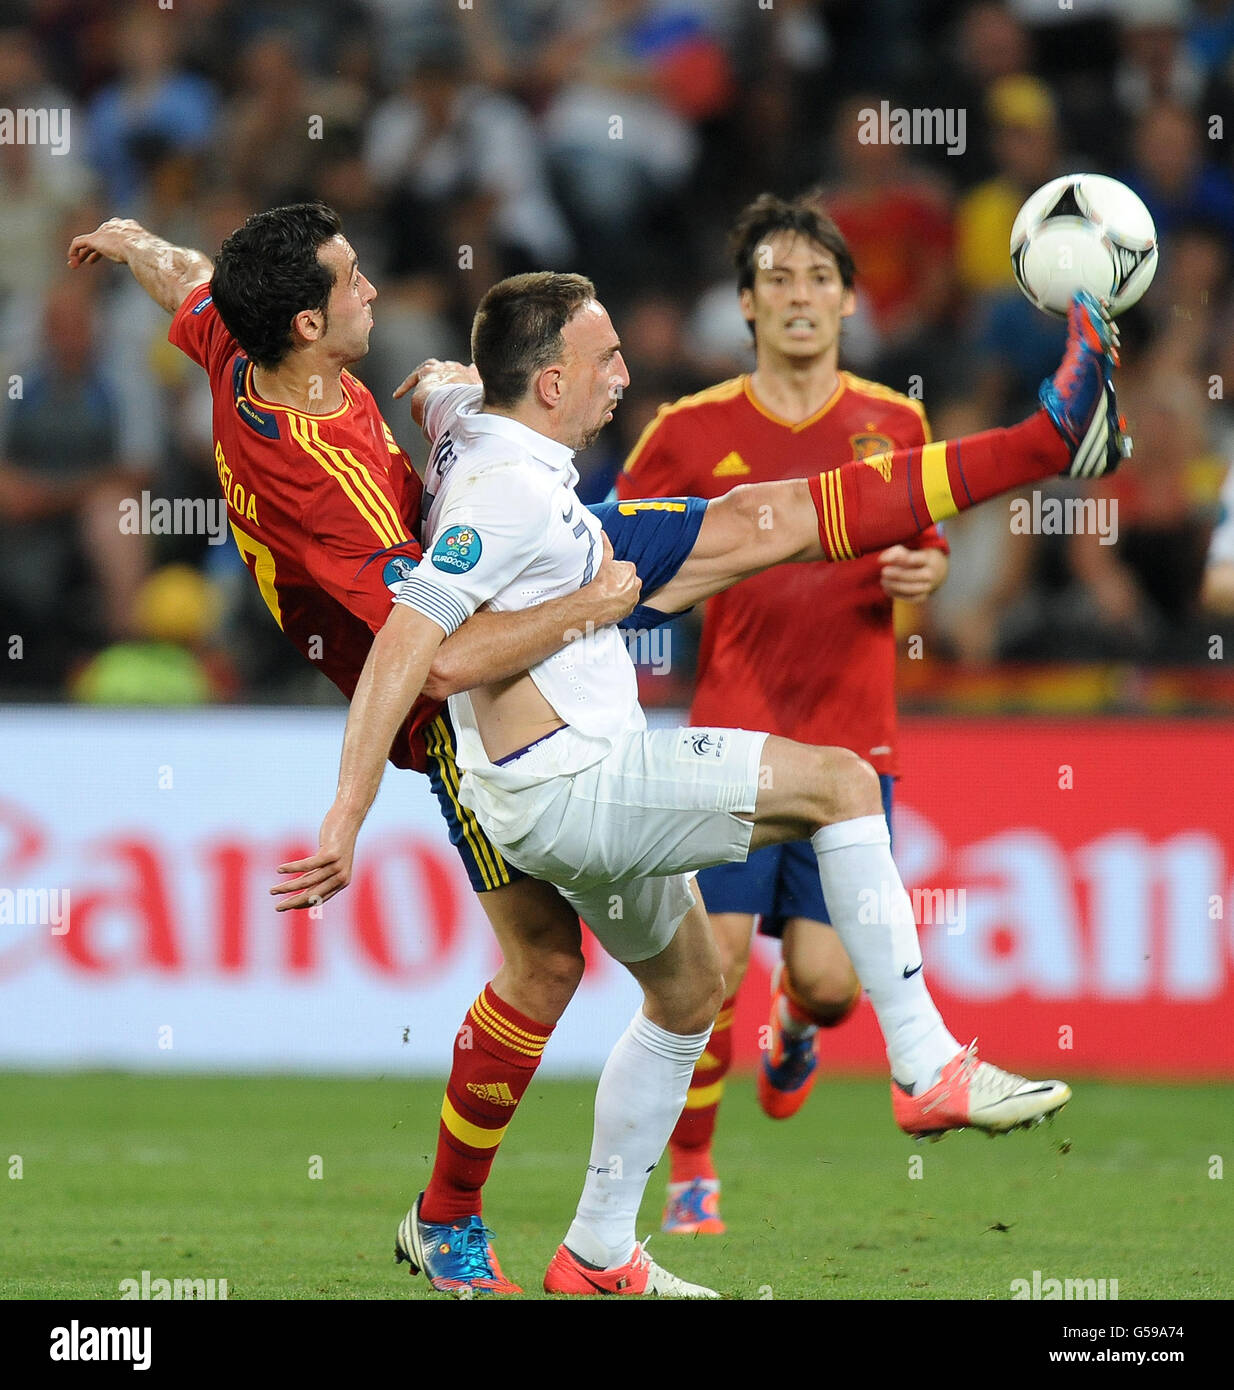 Soccer - UEFA Euro 2012 - Quarter Final - Spain v France - Donbass Arena. Spain's Alvaro Arbeloa tackles France's Franck Ribery Stock Photo